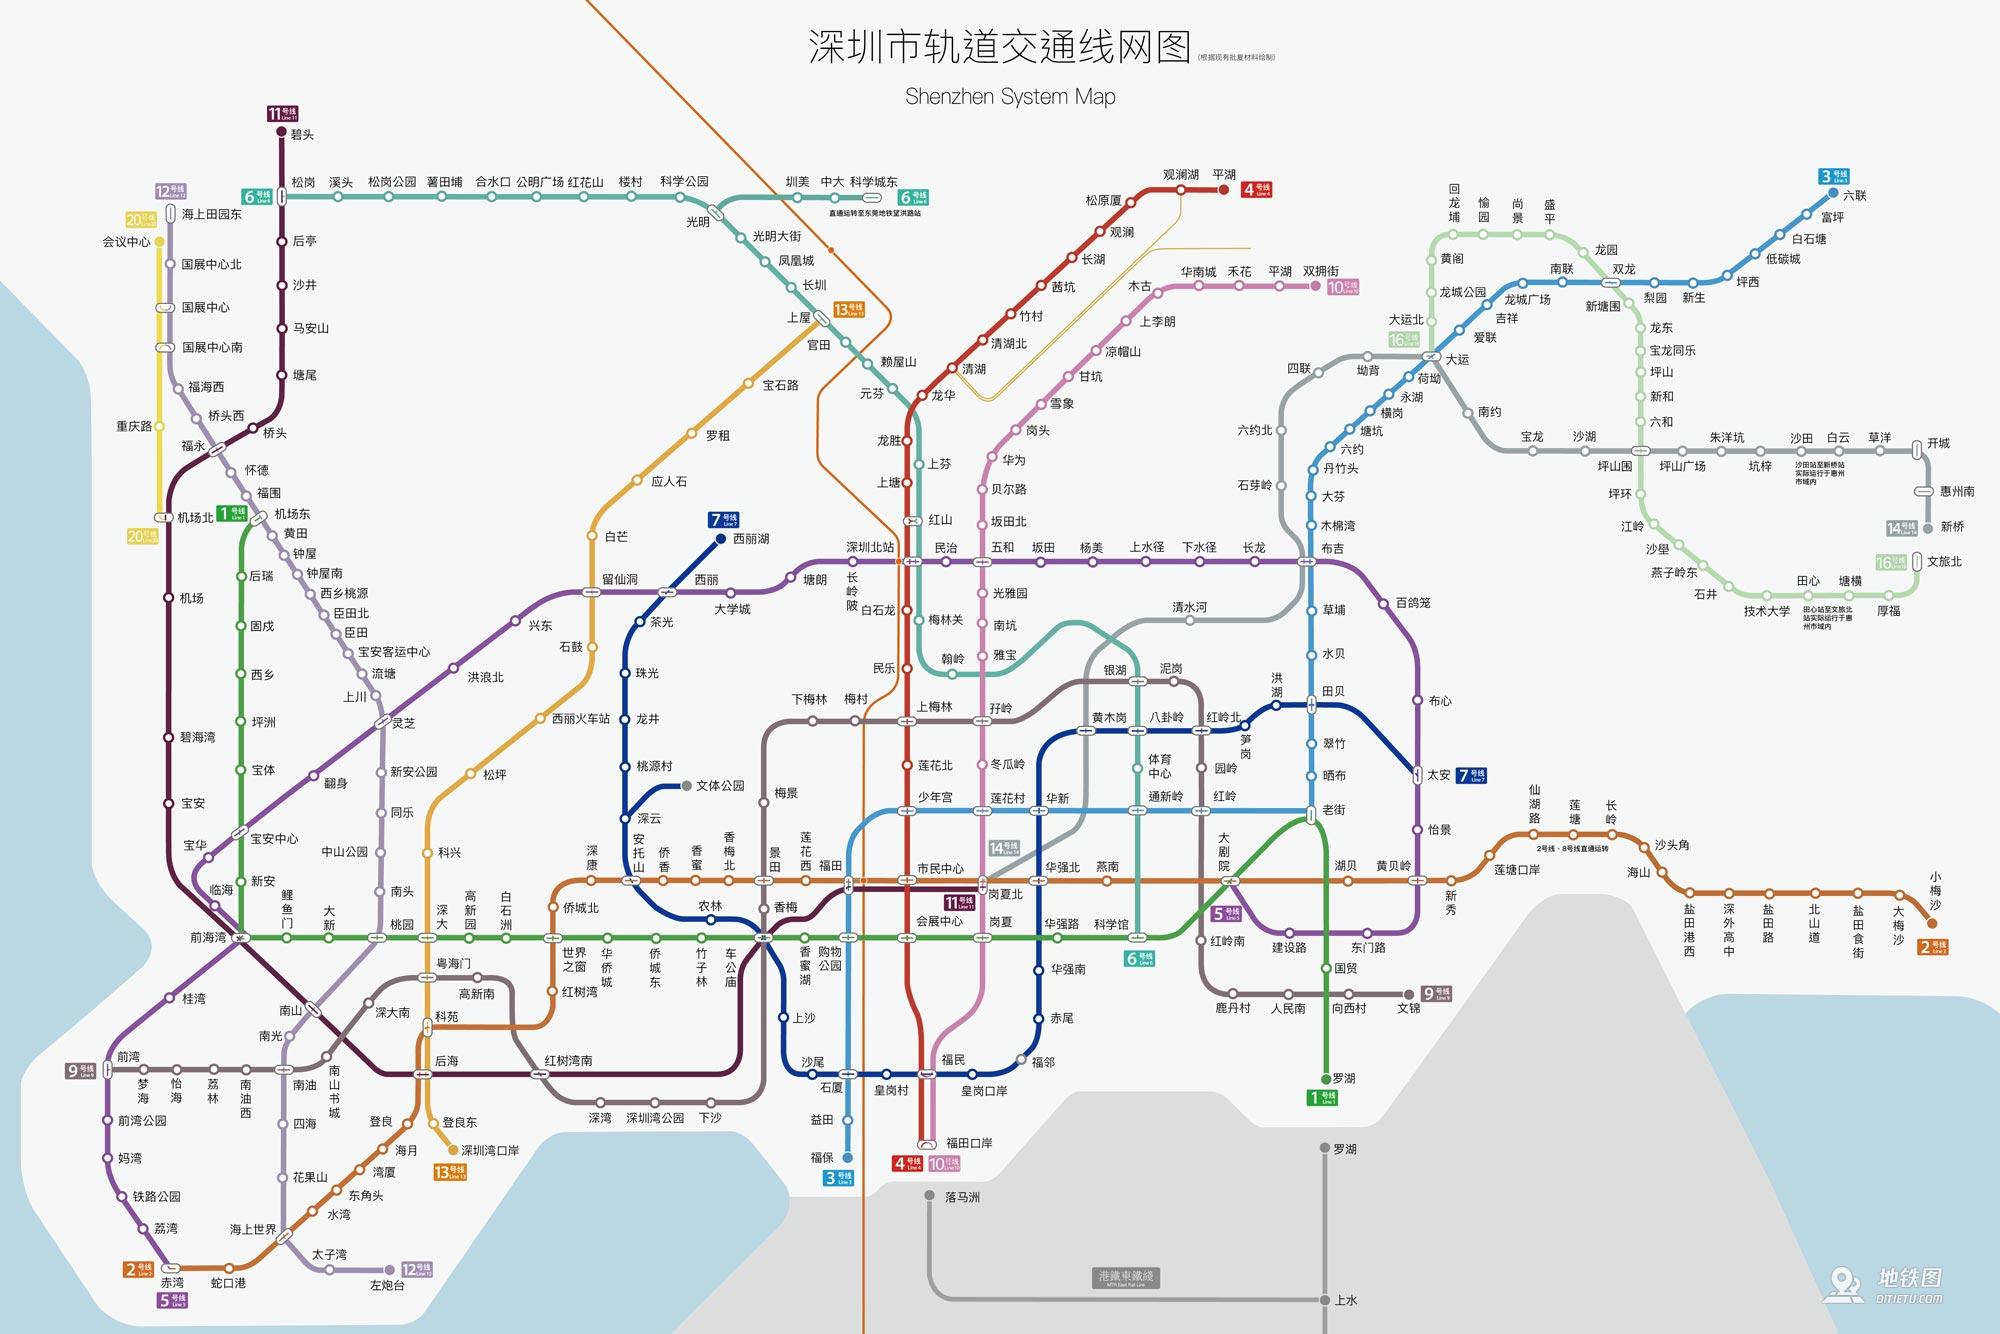 2020年深圳地铁图 放大图片